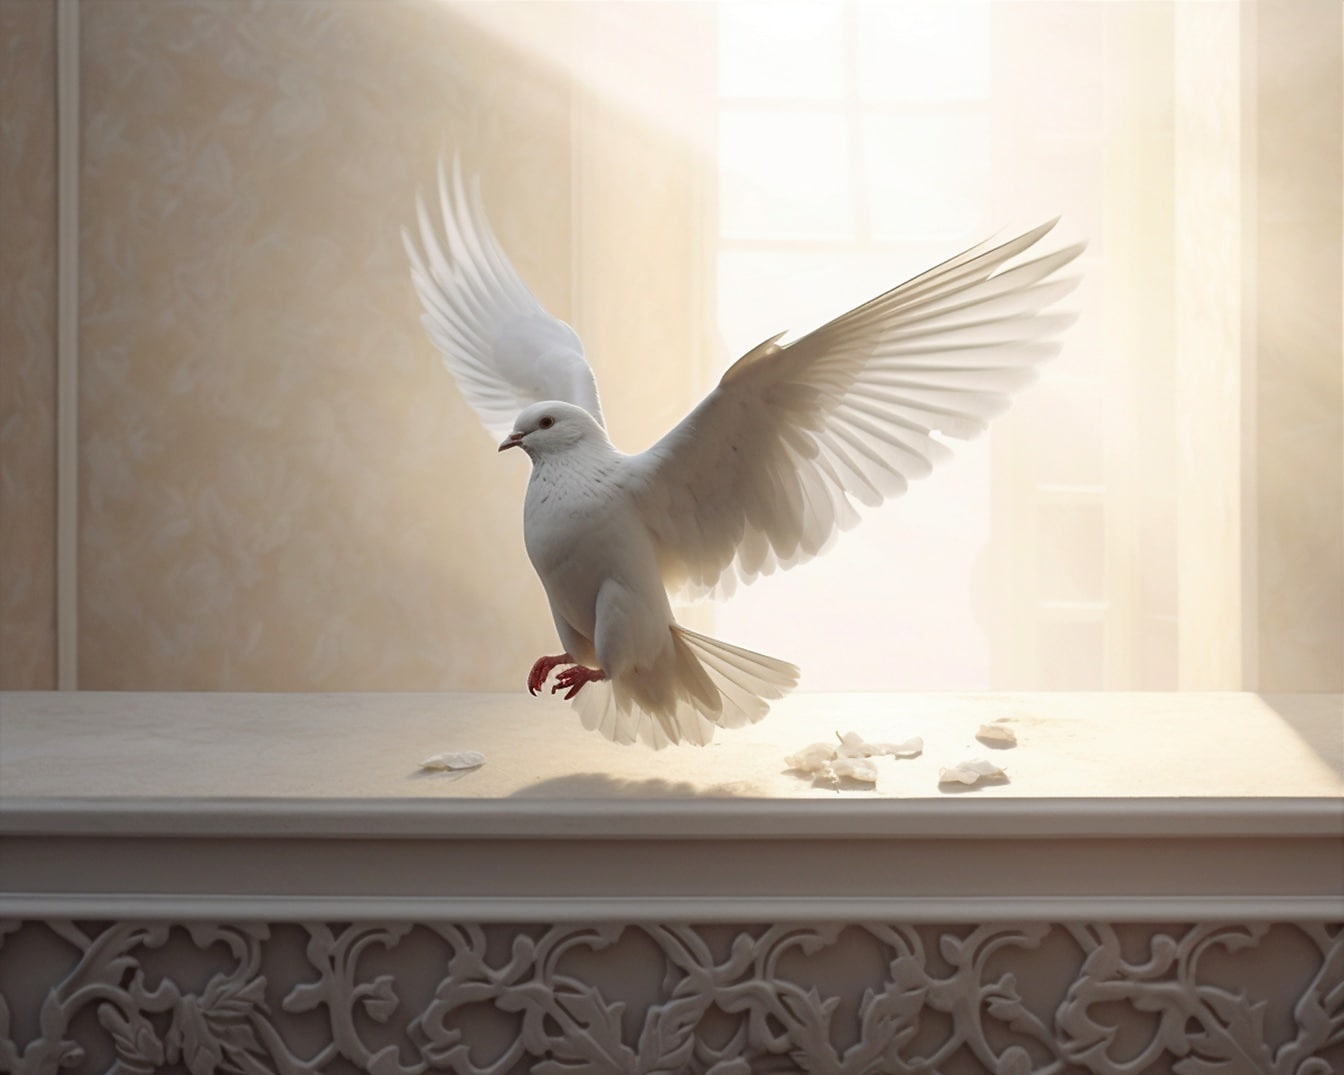 Bella grafica del piccione bianco che vola all’interno della stanza